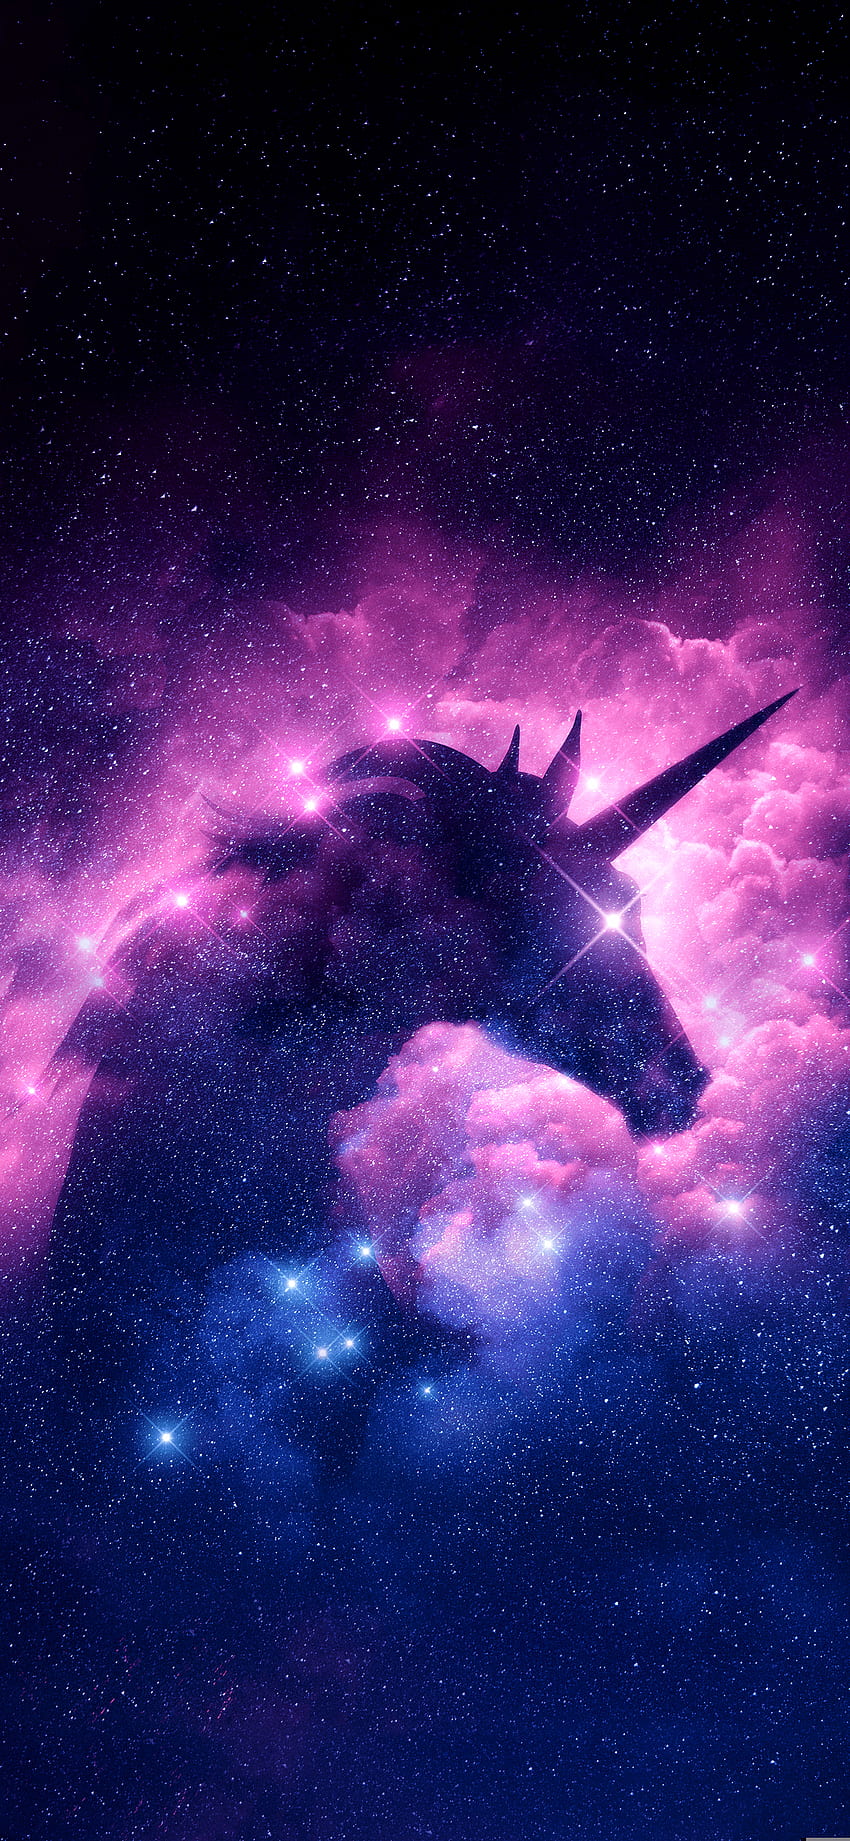 Galaxy Unicorn Wallpapers: Sự kết hợp tuyệt vời giữa thiên hà và con ngựa tạo nên Galaxy Unicorn Wallpapers, hình ảnh đầy ma lực và sức thu hút, đem lại cho người xem niềm đam mê khám phá vô tận của vũ trụ.